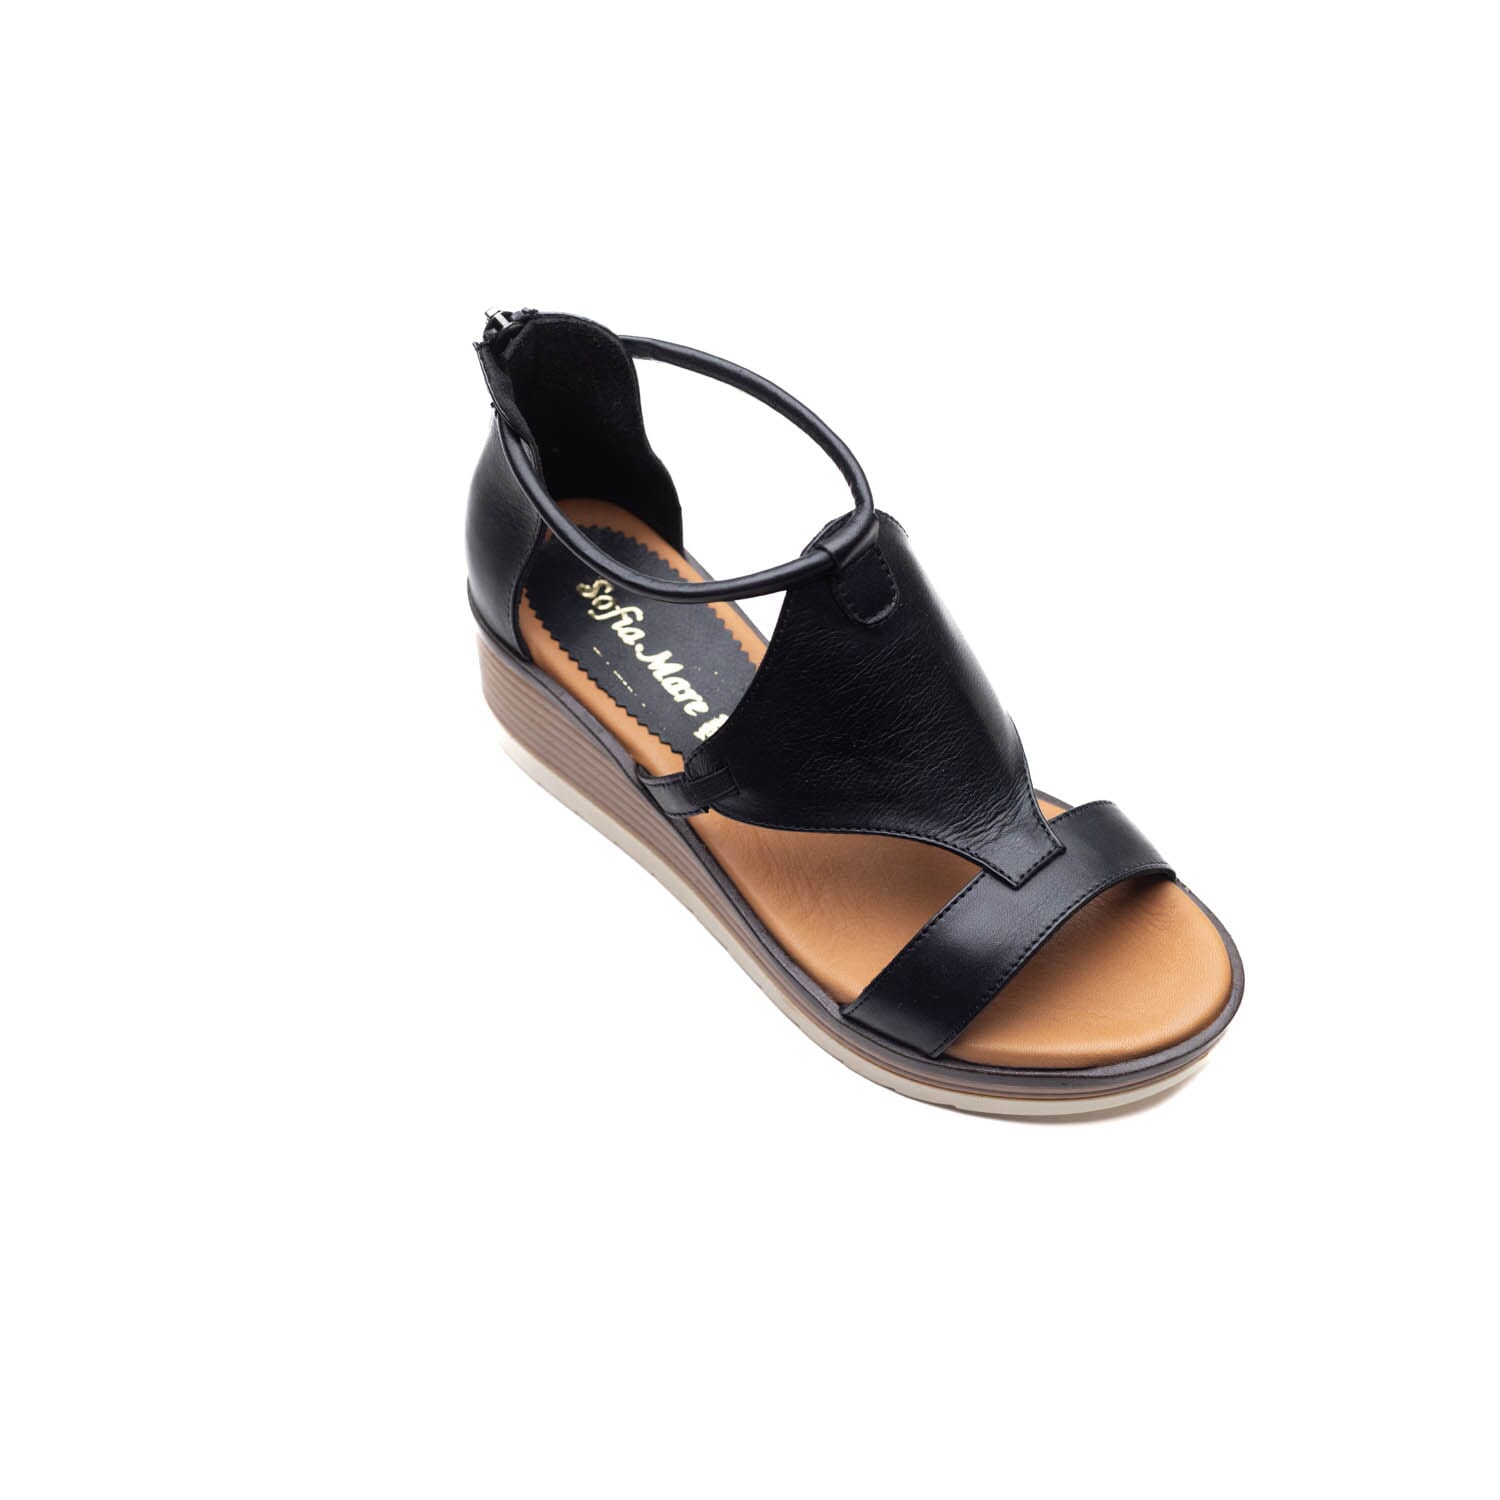 Sofia Mare – 11276 – Black – Perocili Shoes